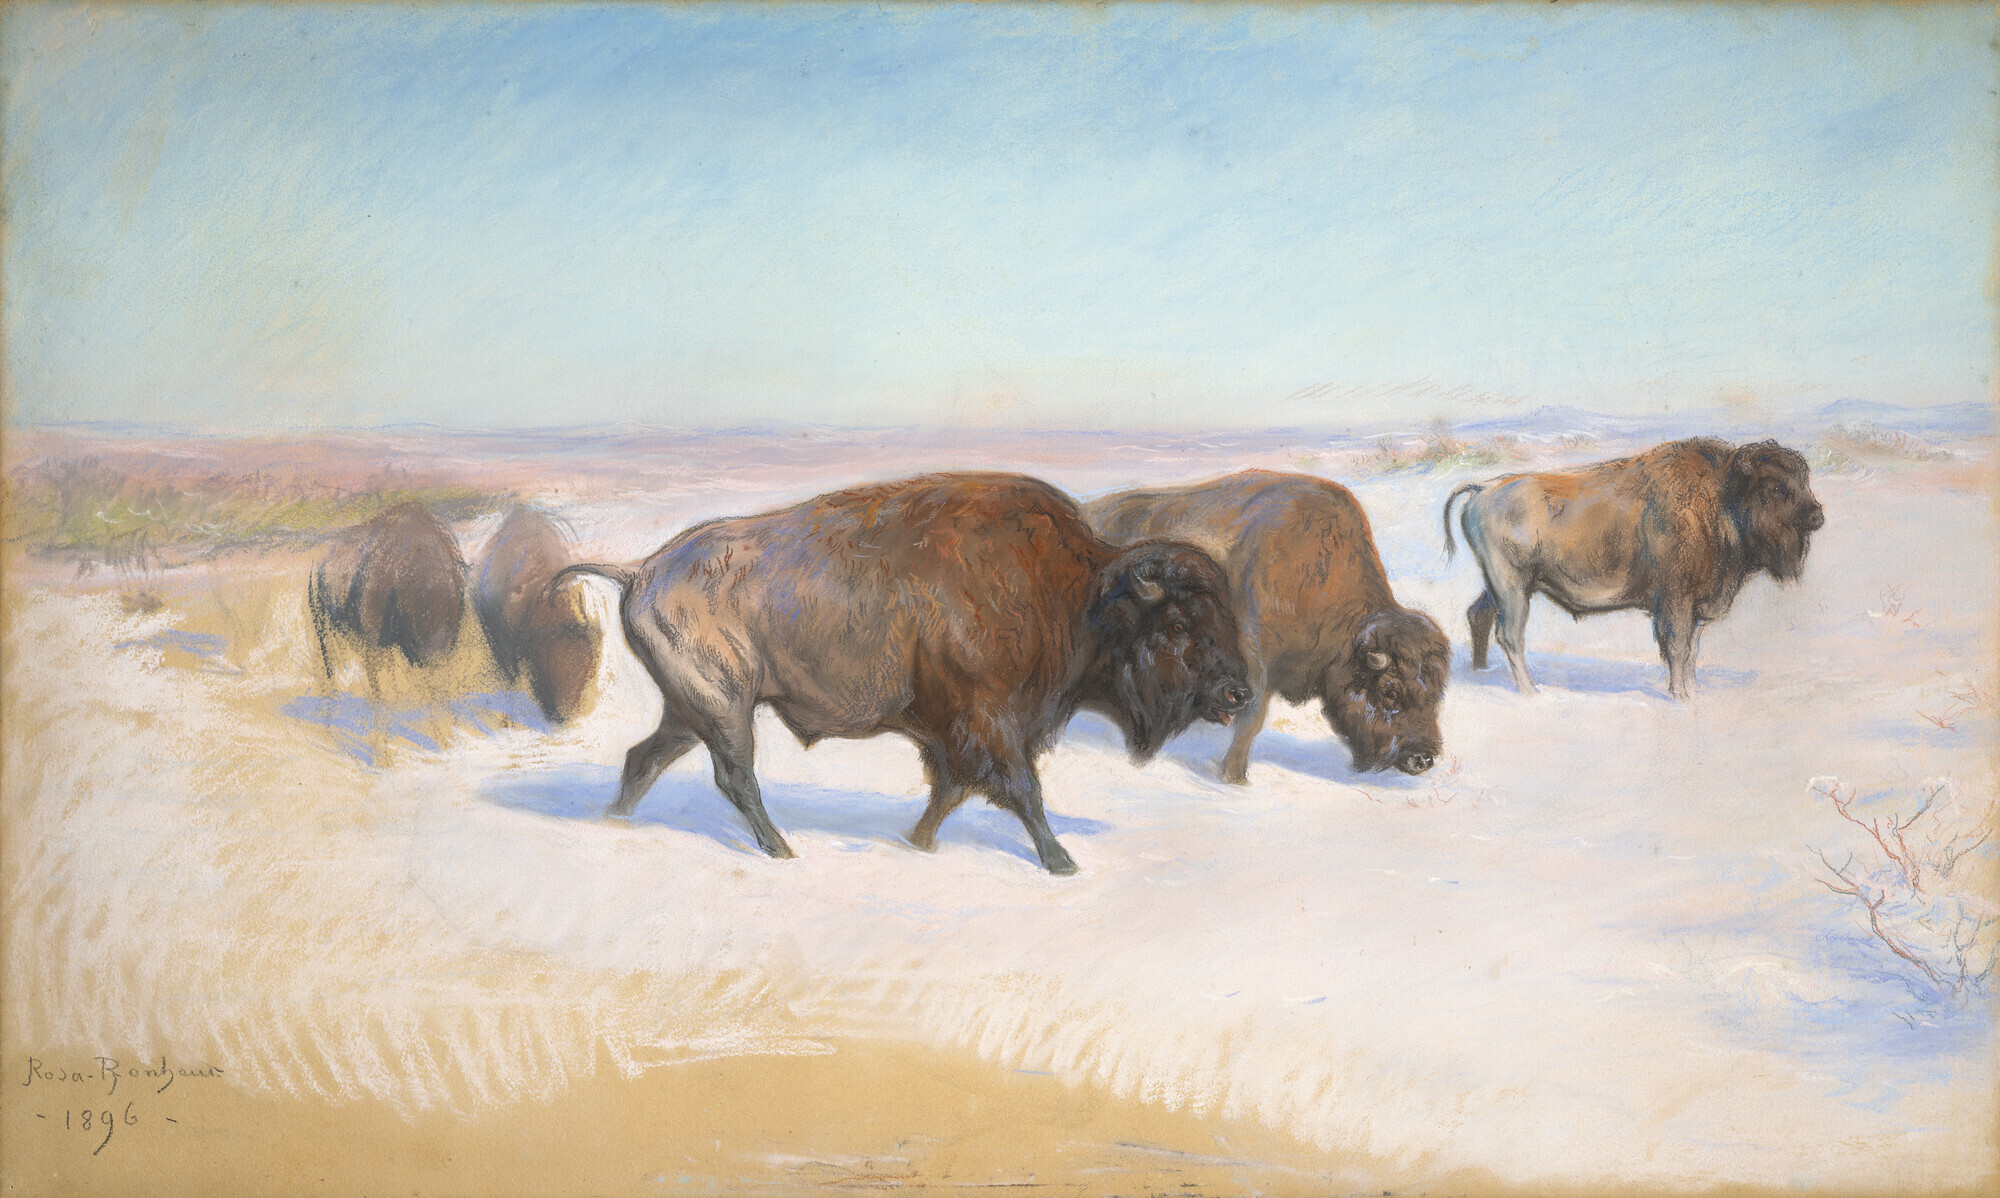 <strong>Le rêve américain de Rosa Bonheur</strong> 
<strong><em>L’Emigration des bisons</em></strong><strong>, un pastel inédit aux enchères le 20 mars</strong>